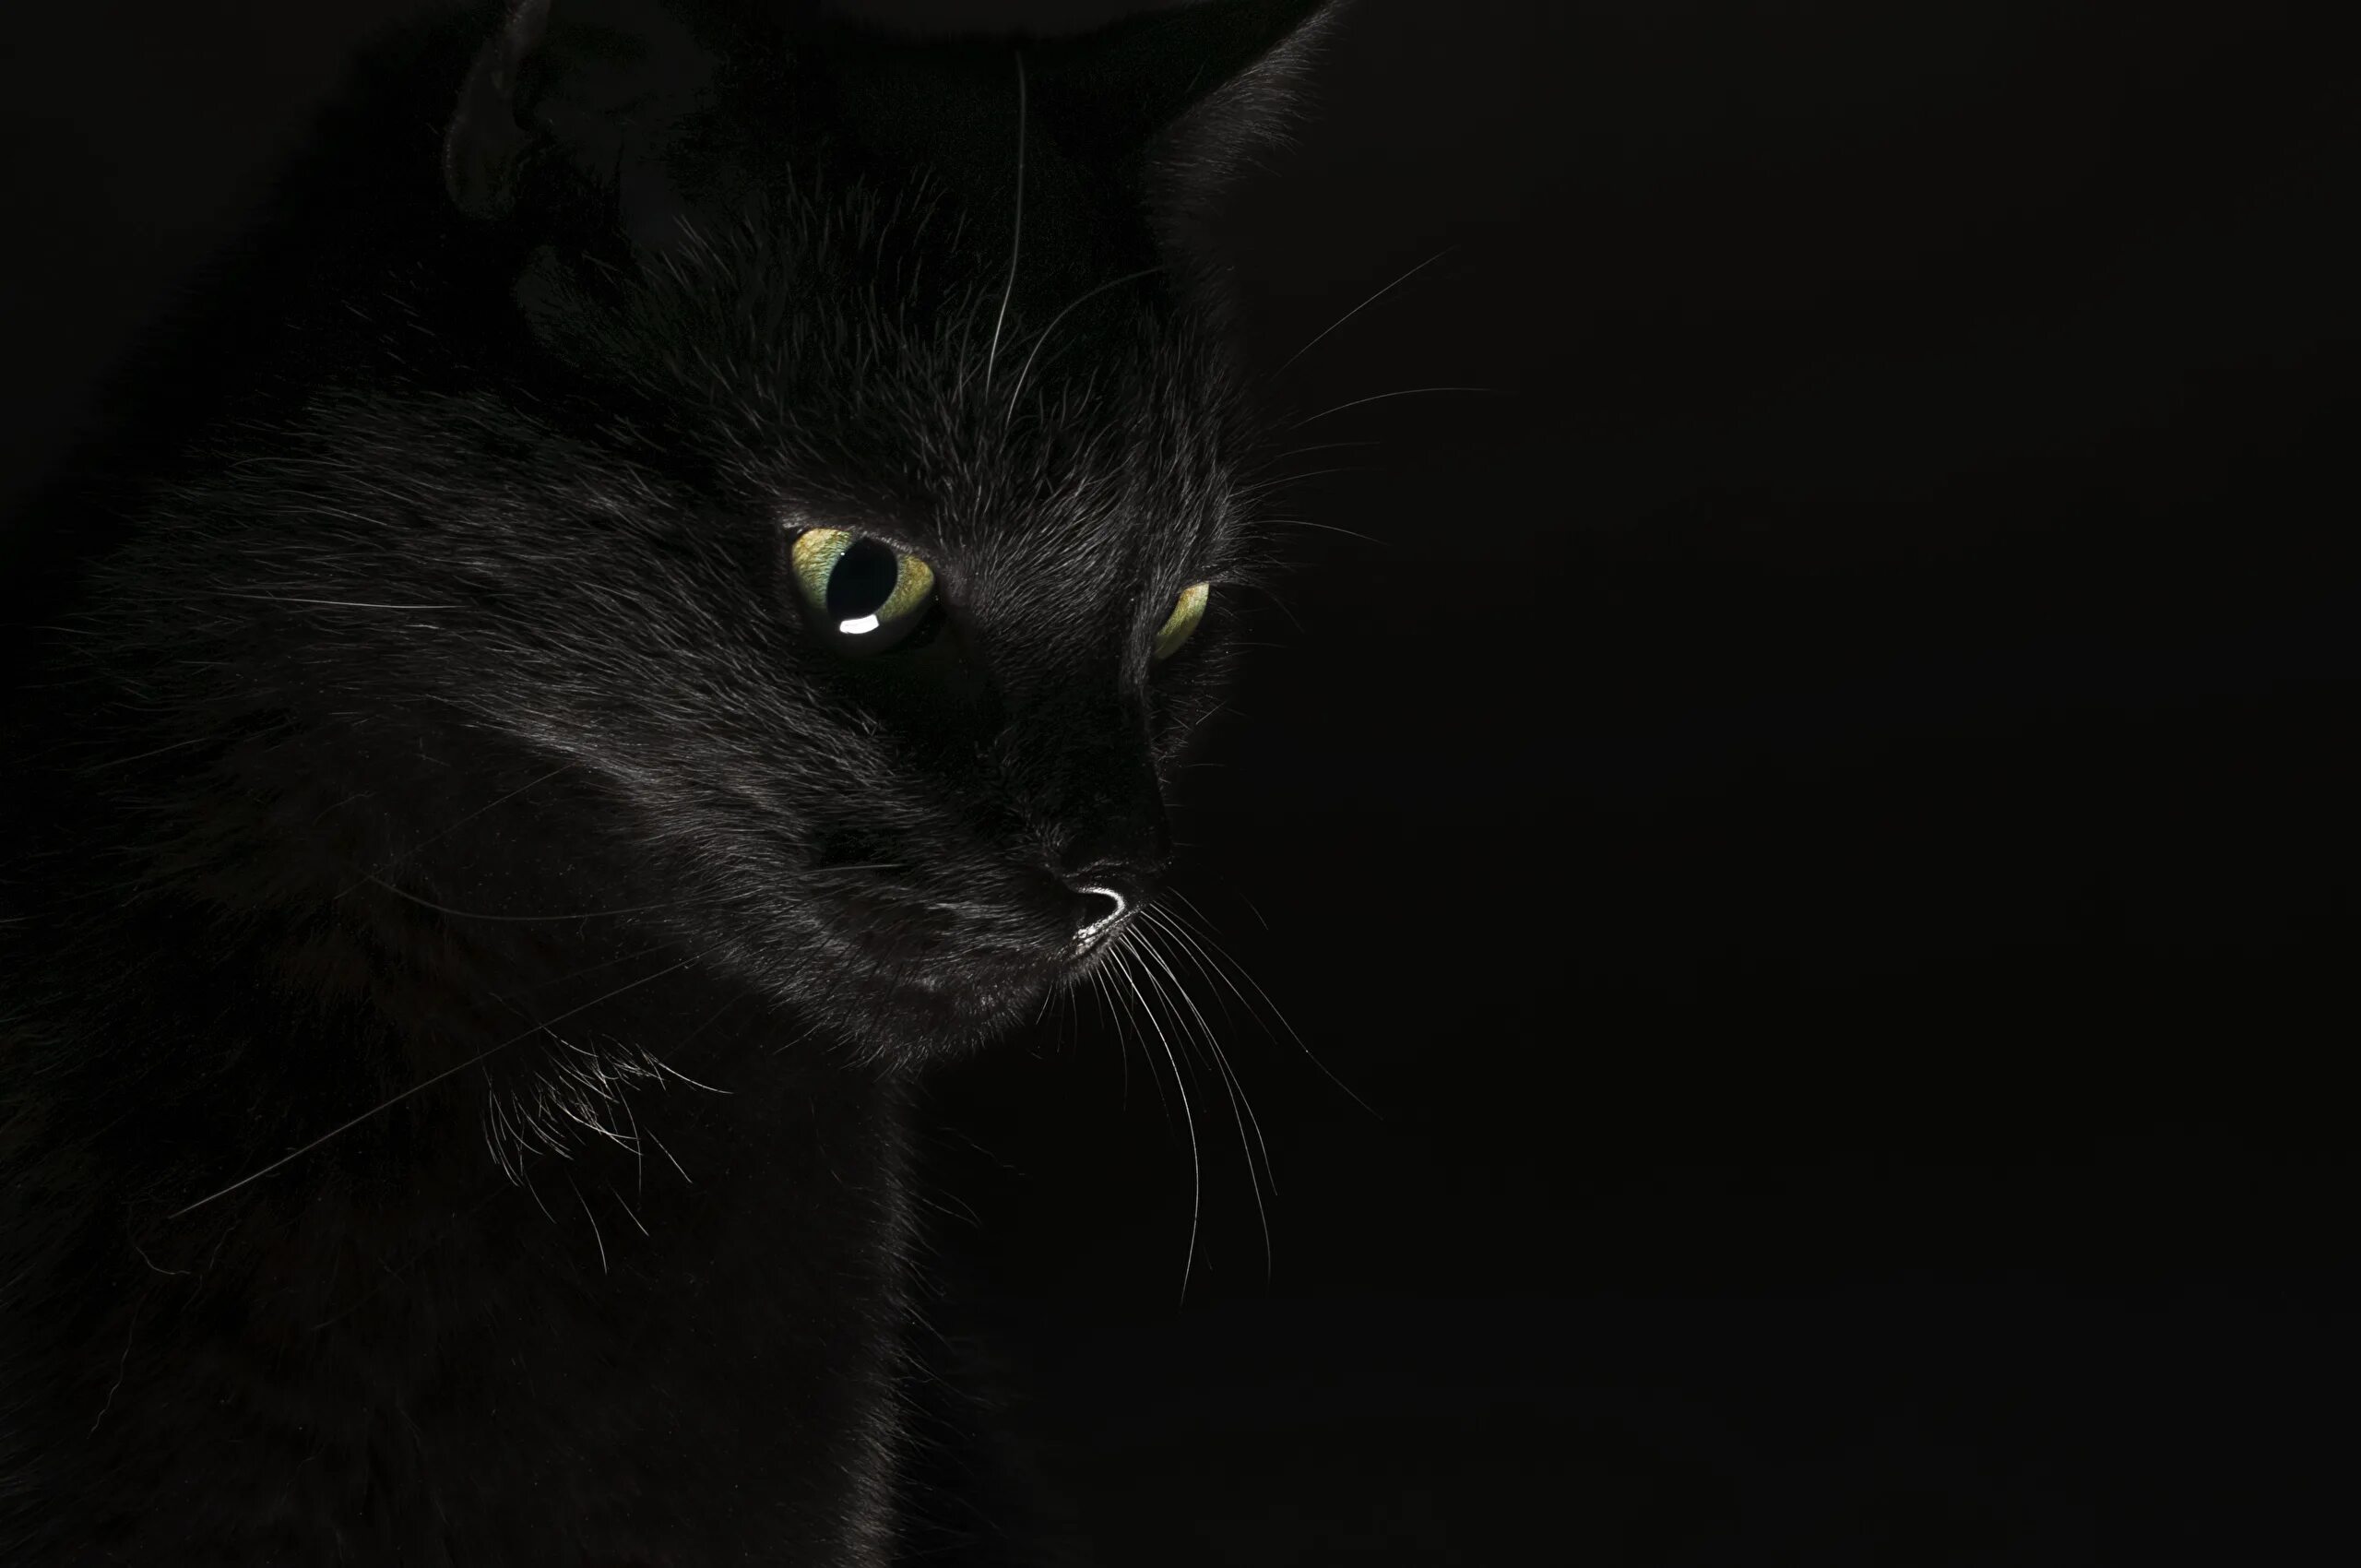 Обои темные черные. Черные обои. Темные обои. Красивый черный кот. Обои на рабочий стол темные.